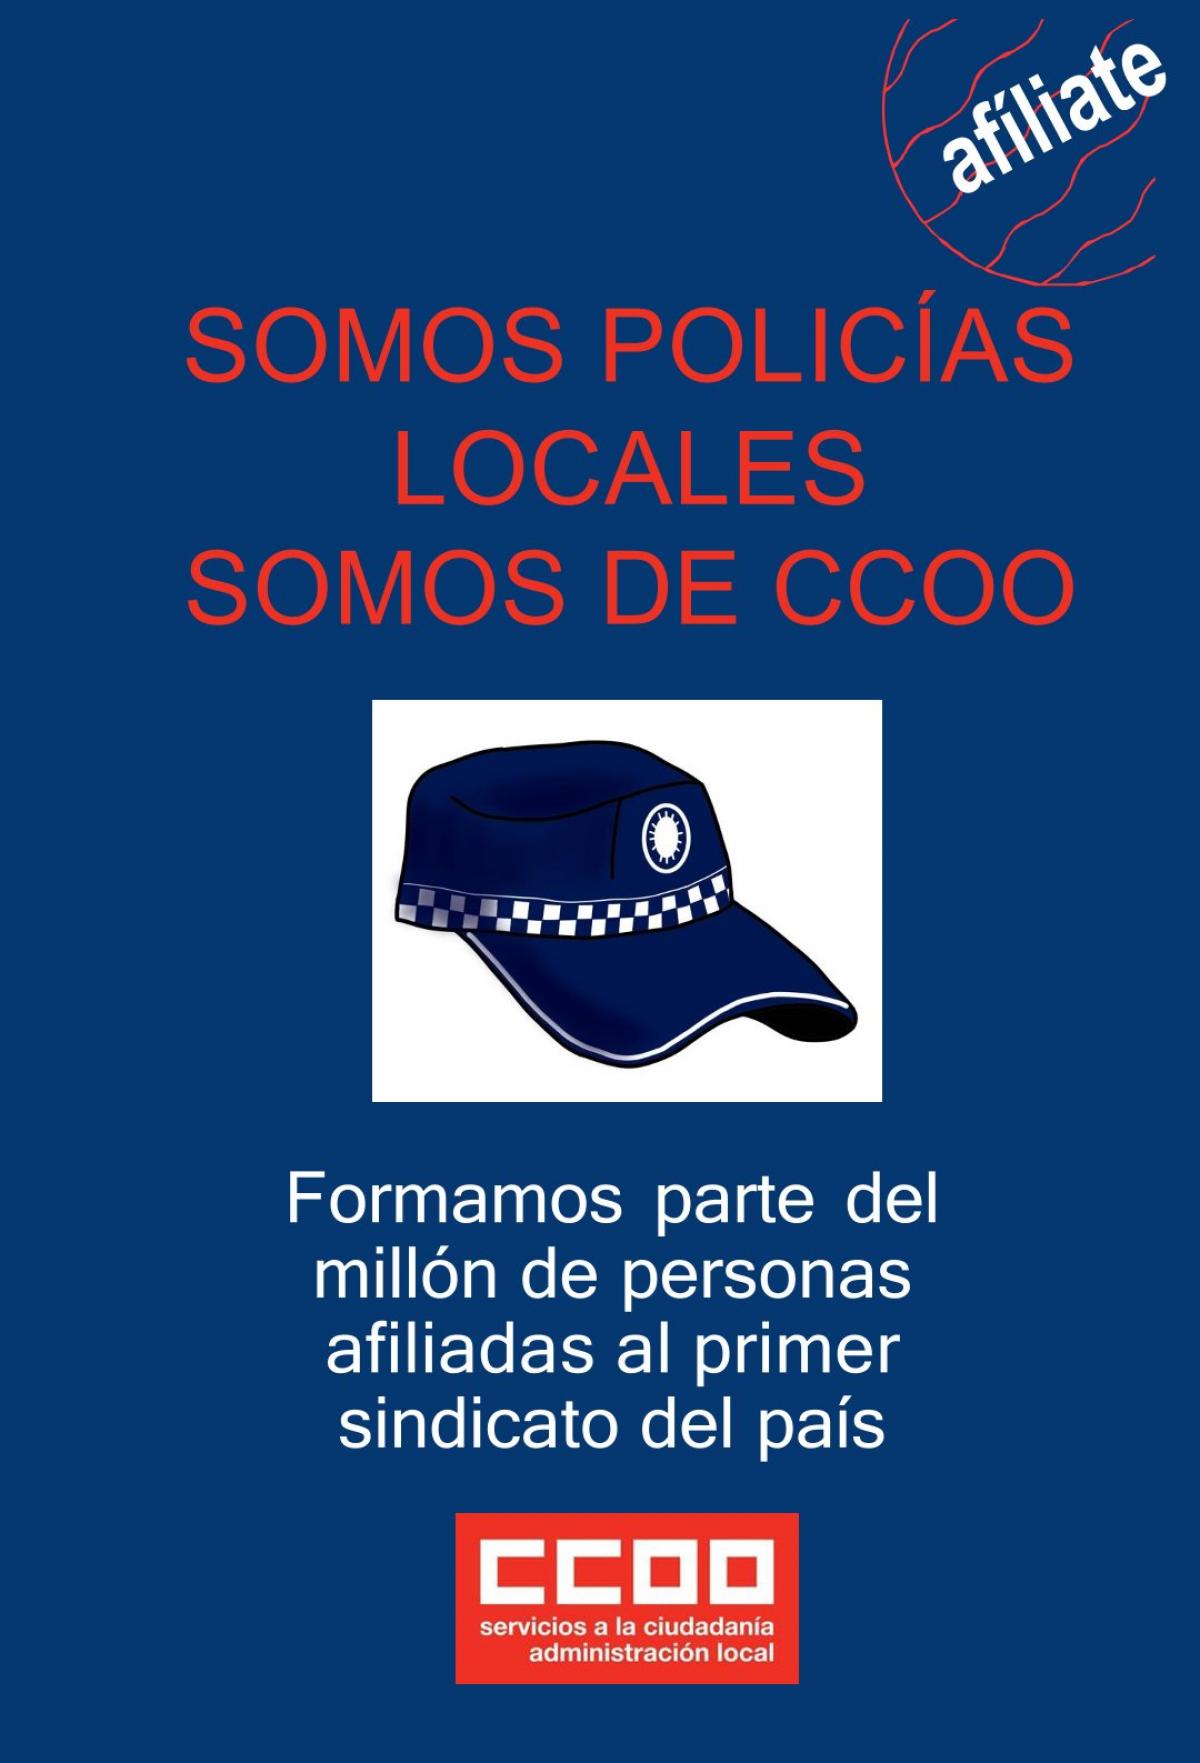 SOMOS POLCIAS LOCALES DE CCOO 1